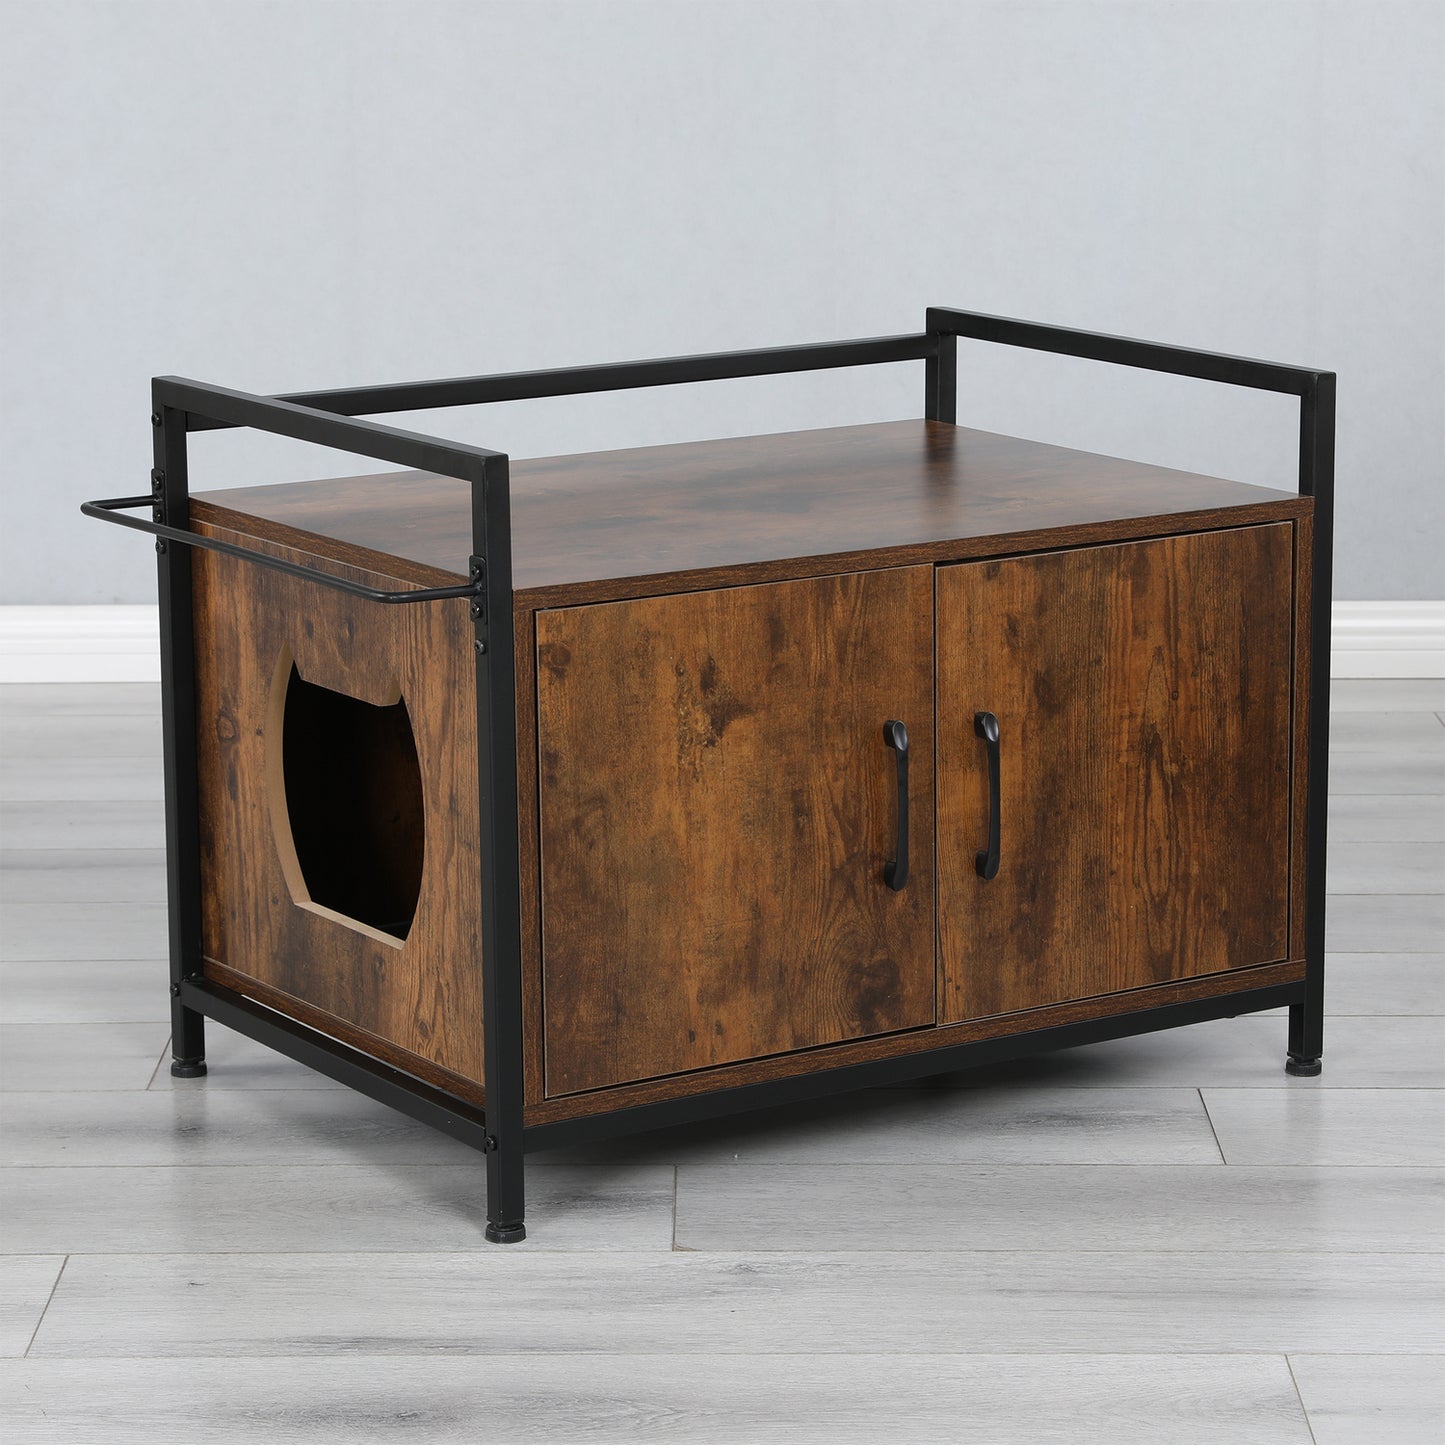 Anysun 30 Inches Cat Litter Box Enclosure Modern Cat Furniture - Rustic Brown